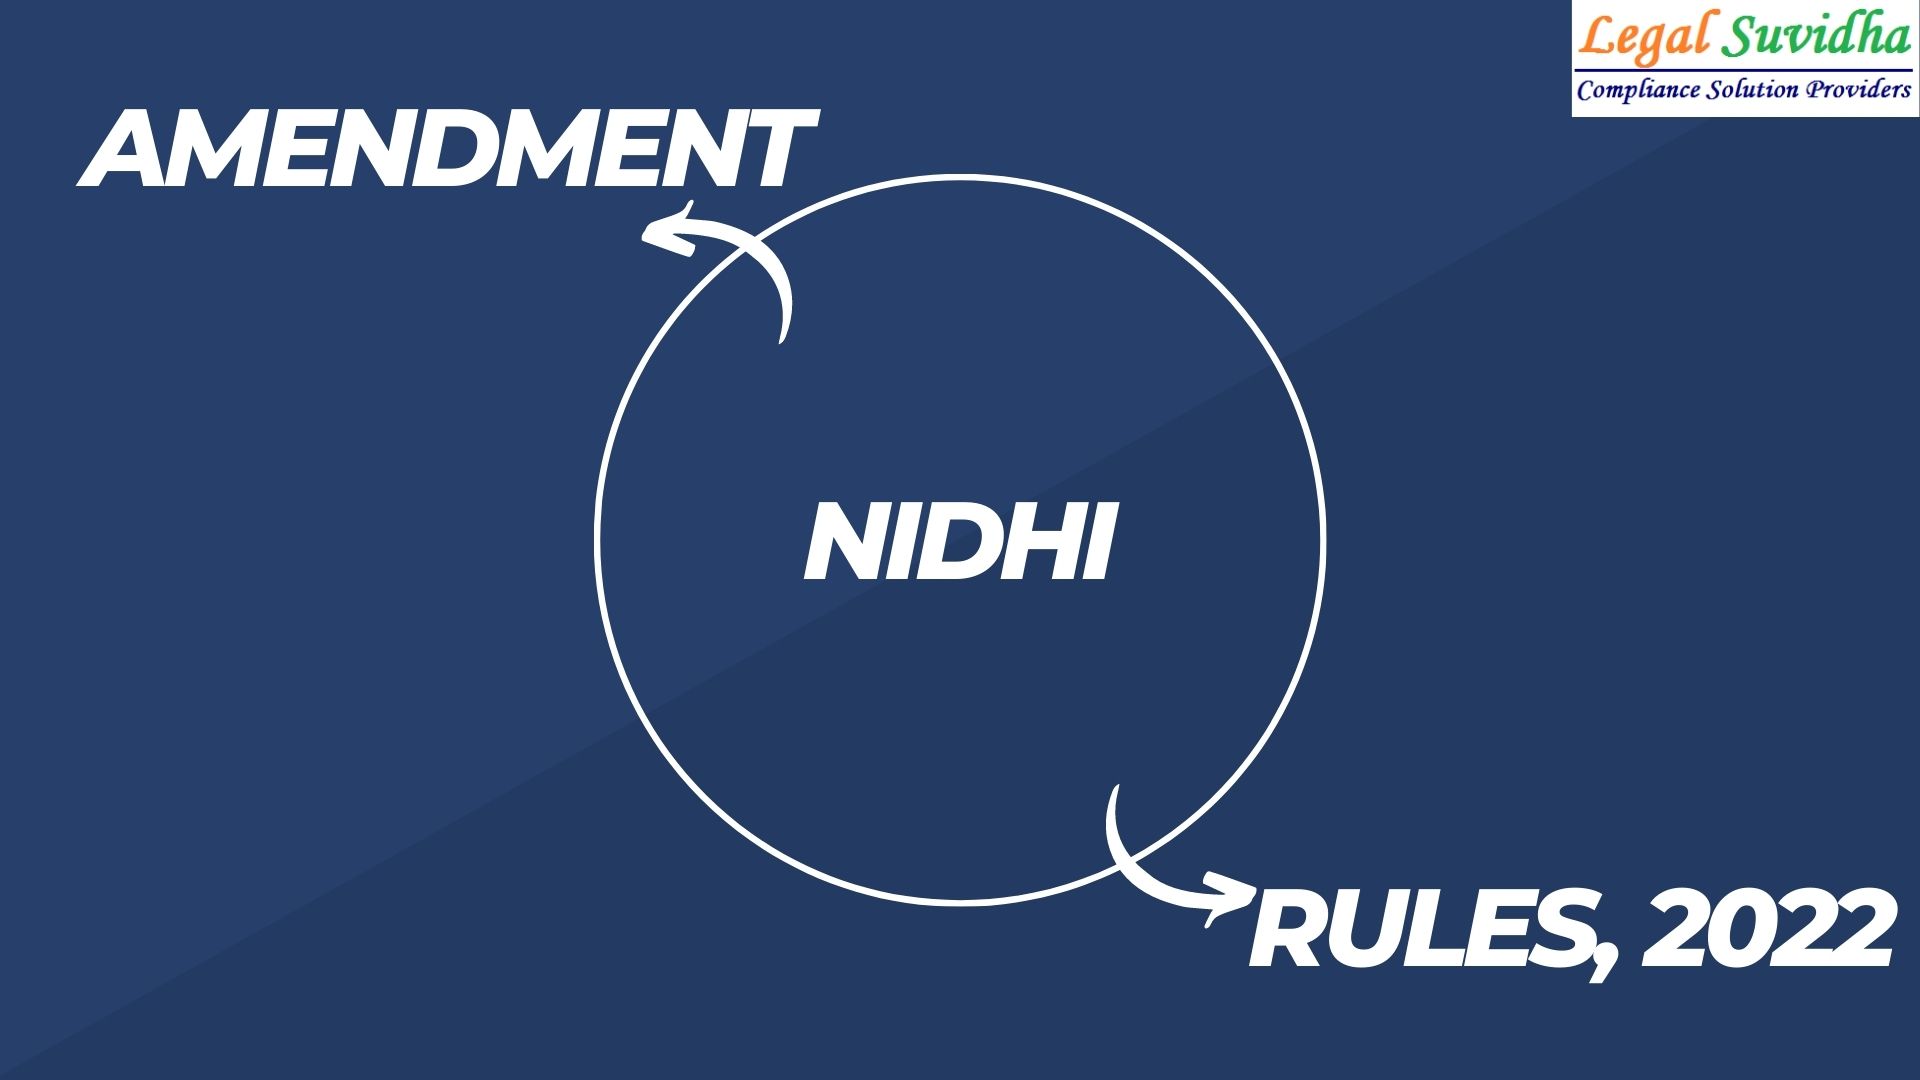 Amendment rules of Nidhi, 2022